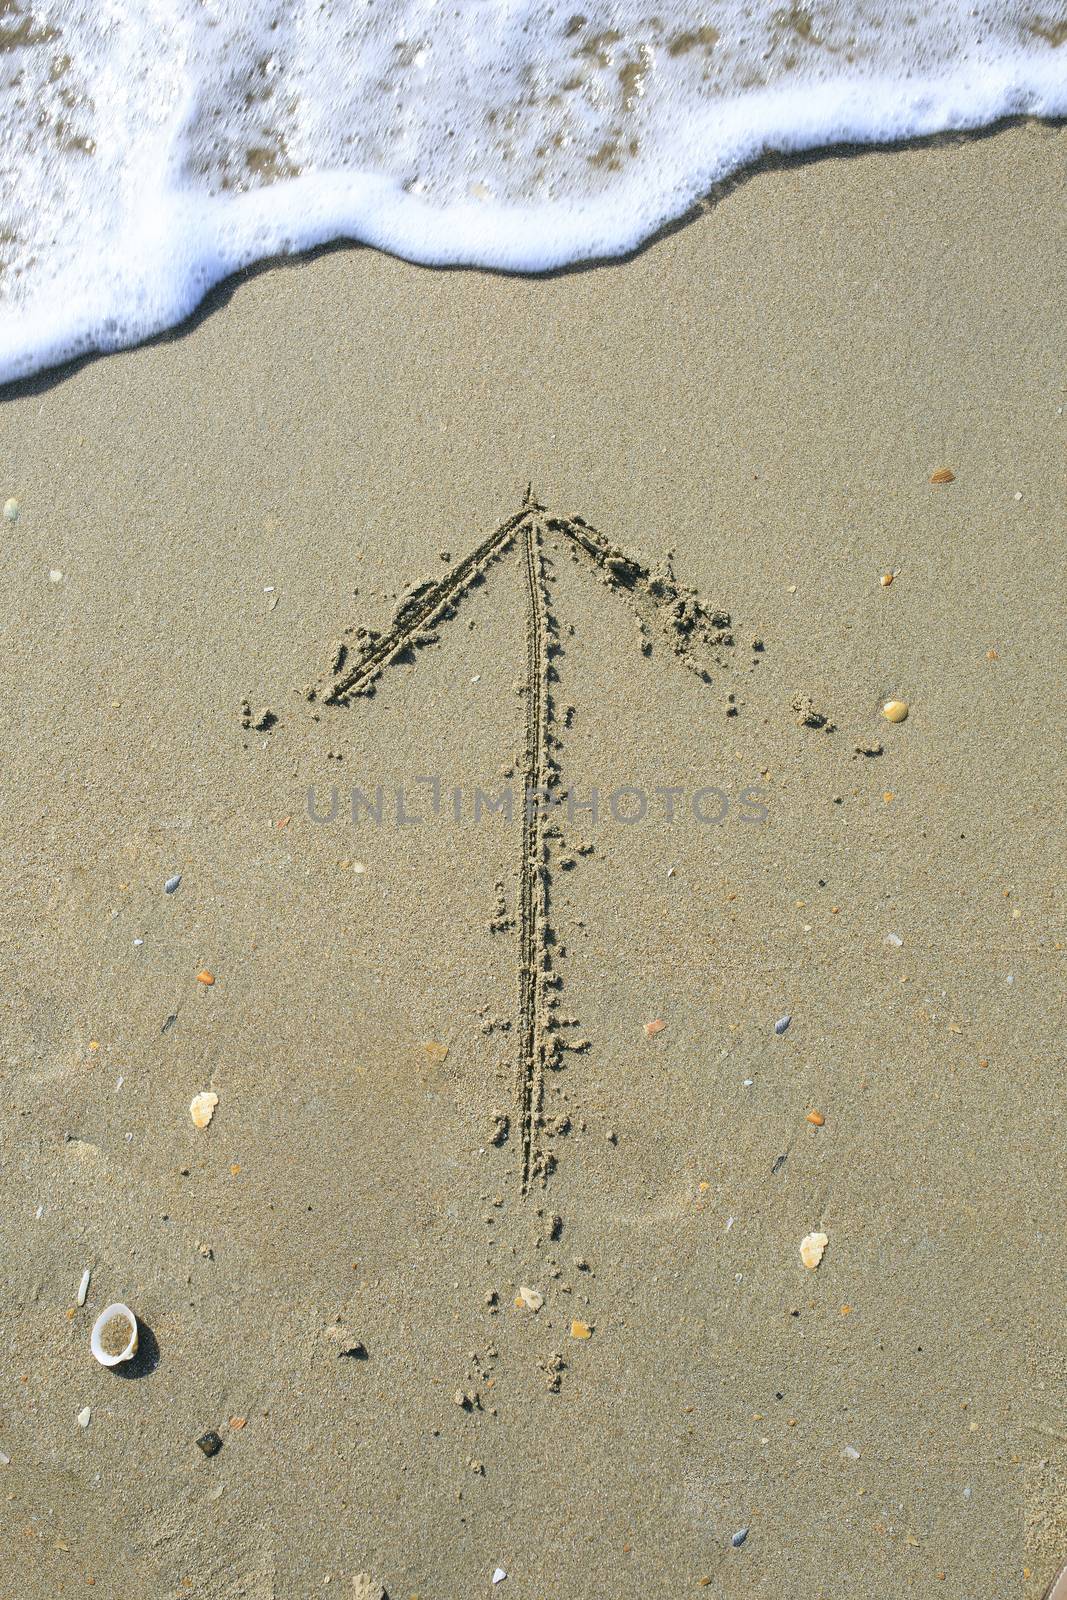 Arrow drawn on the sand beach